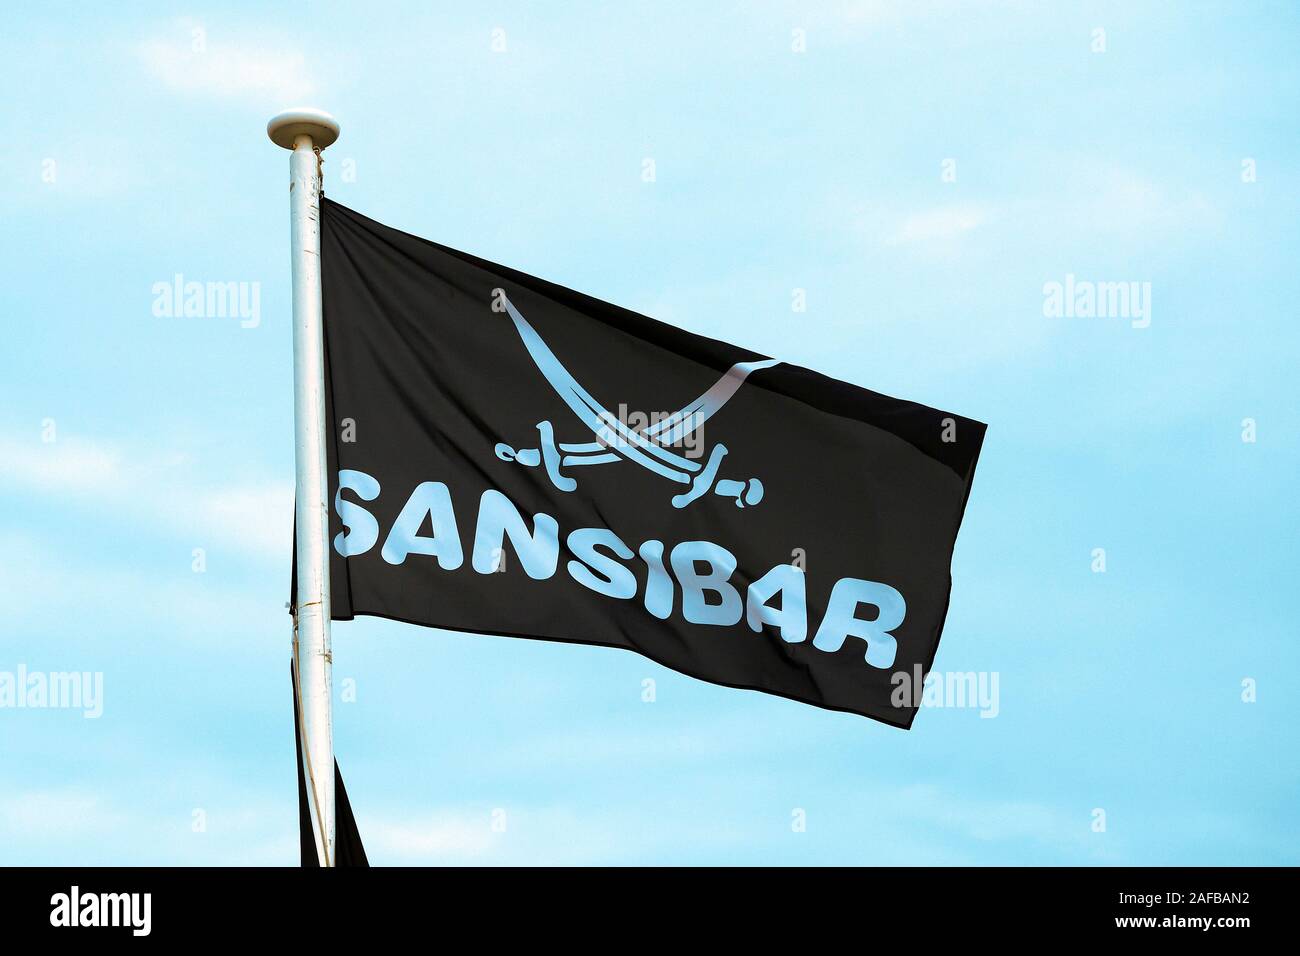 Fahne des Kultrestaurant 'Sansibar' in den Dünen von Ratum, Sylt, nordfriesische Inseln, Nordfriesland, Schleswig-Holstein, Deutschland Stock Photo